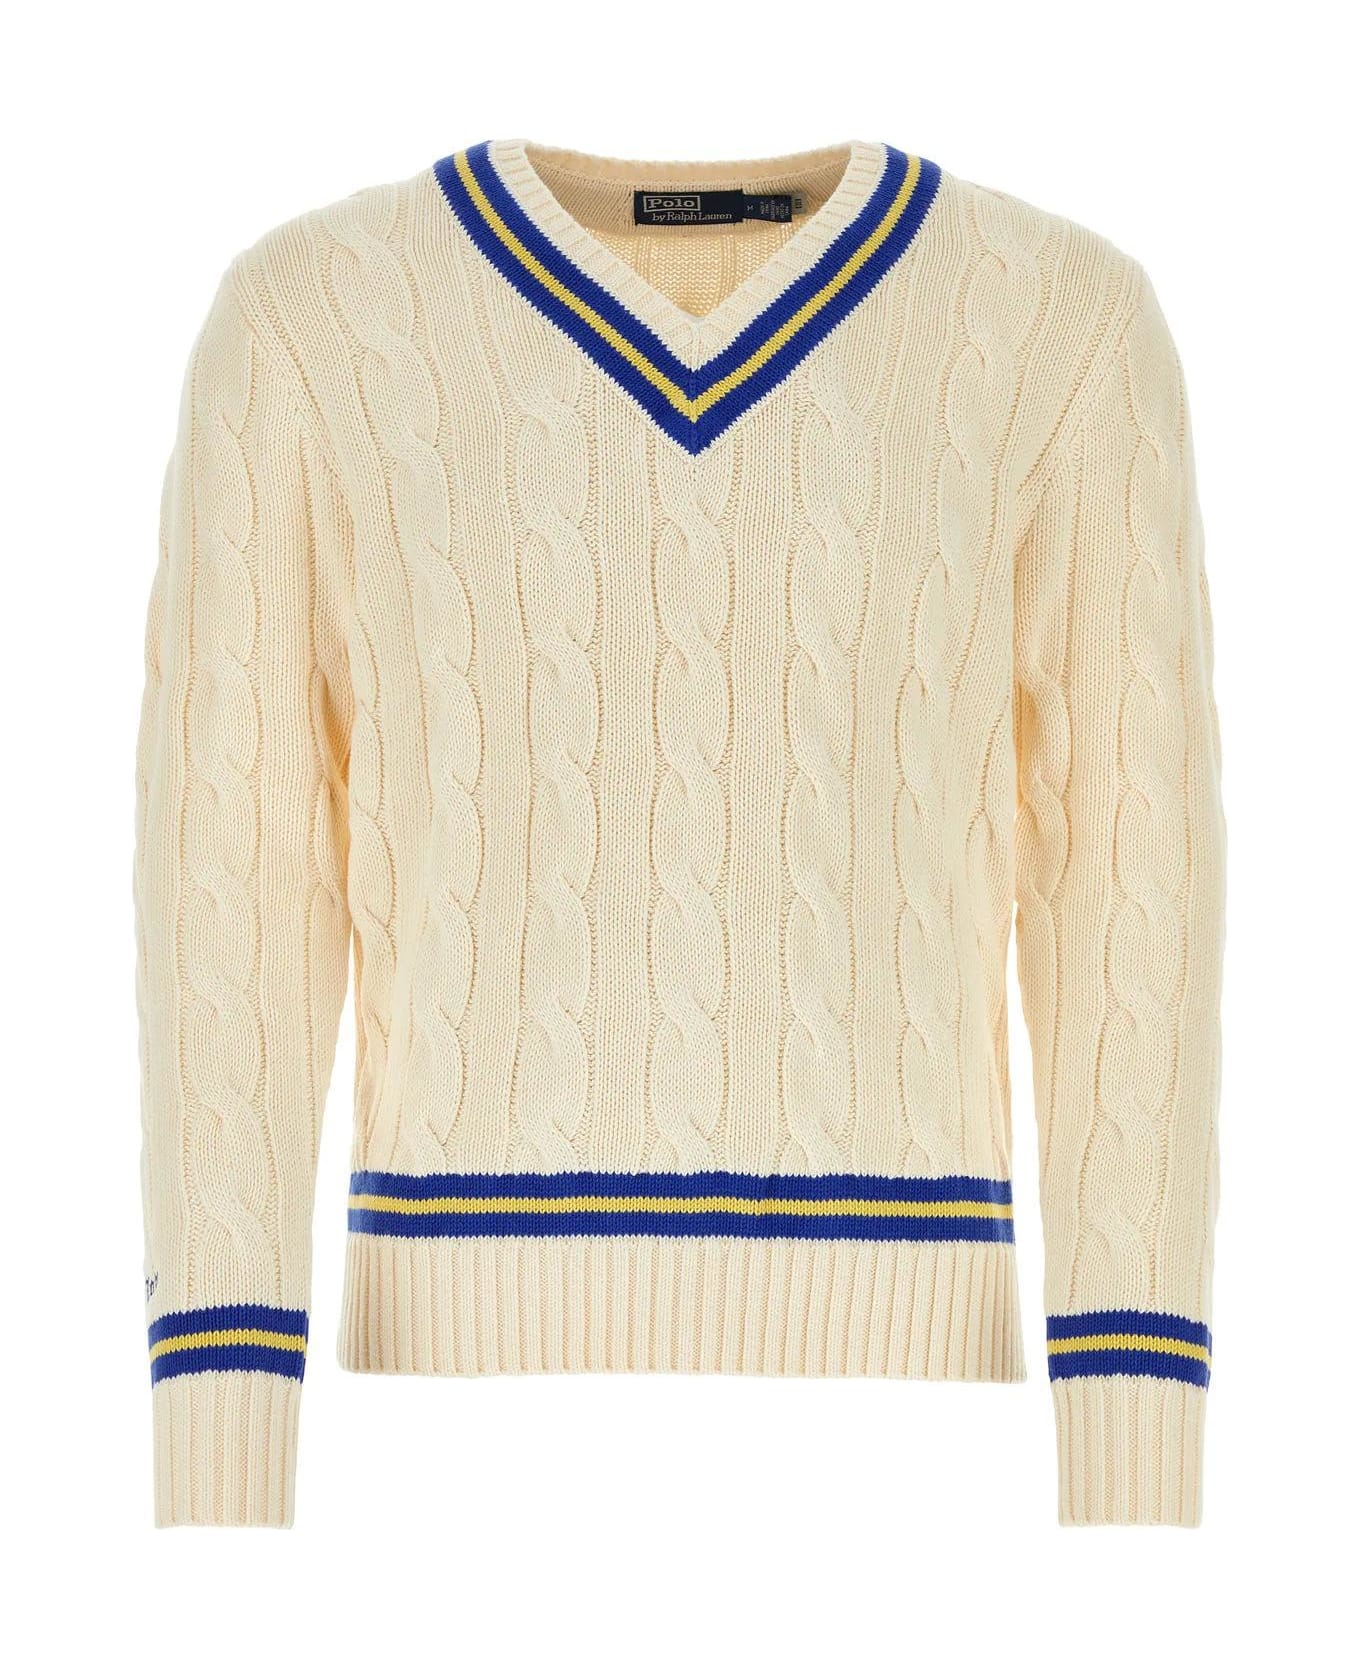 Ralph Lauren Cream Cotton Sweater - WHITE/BLUE